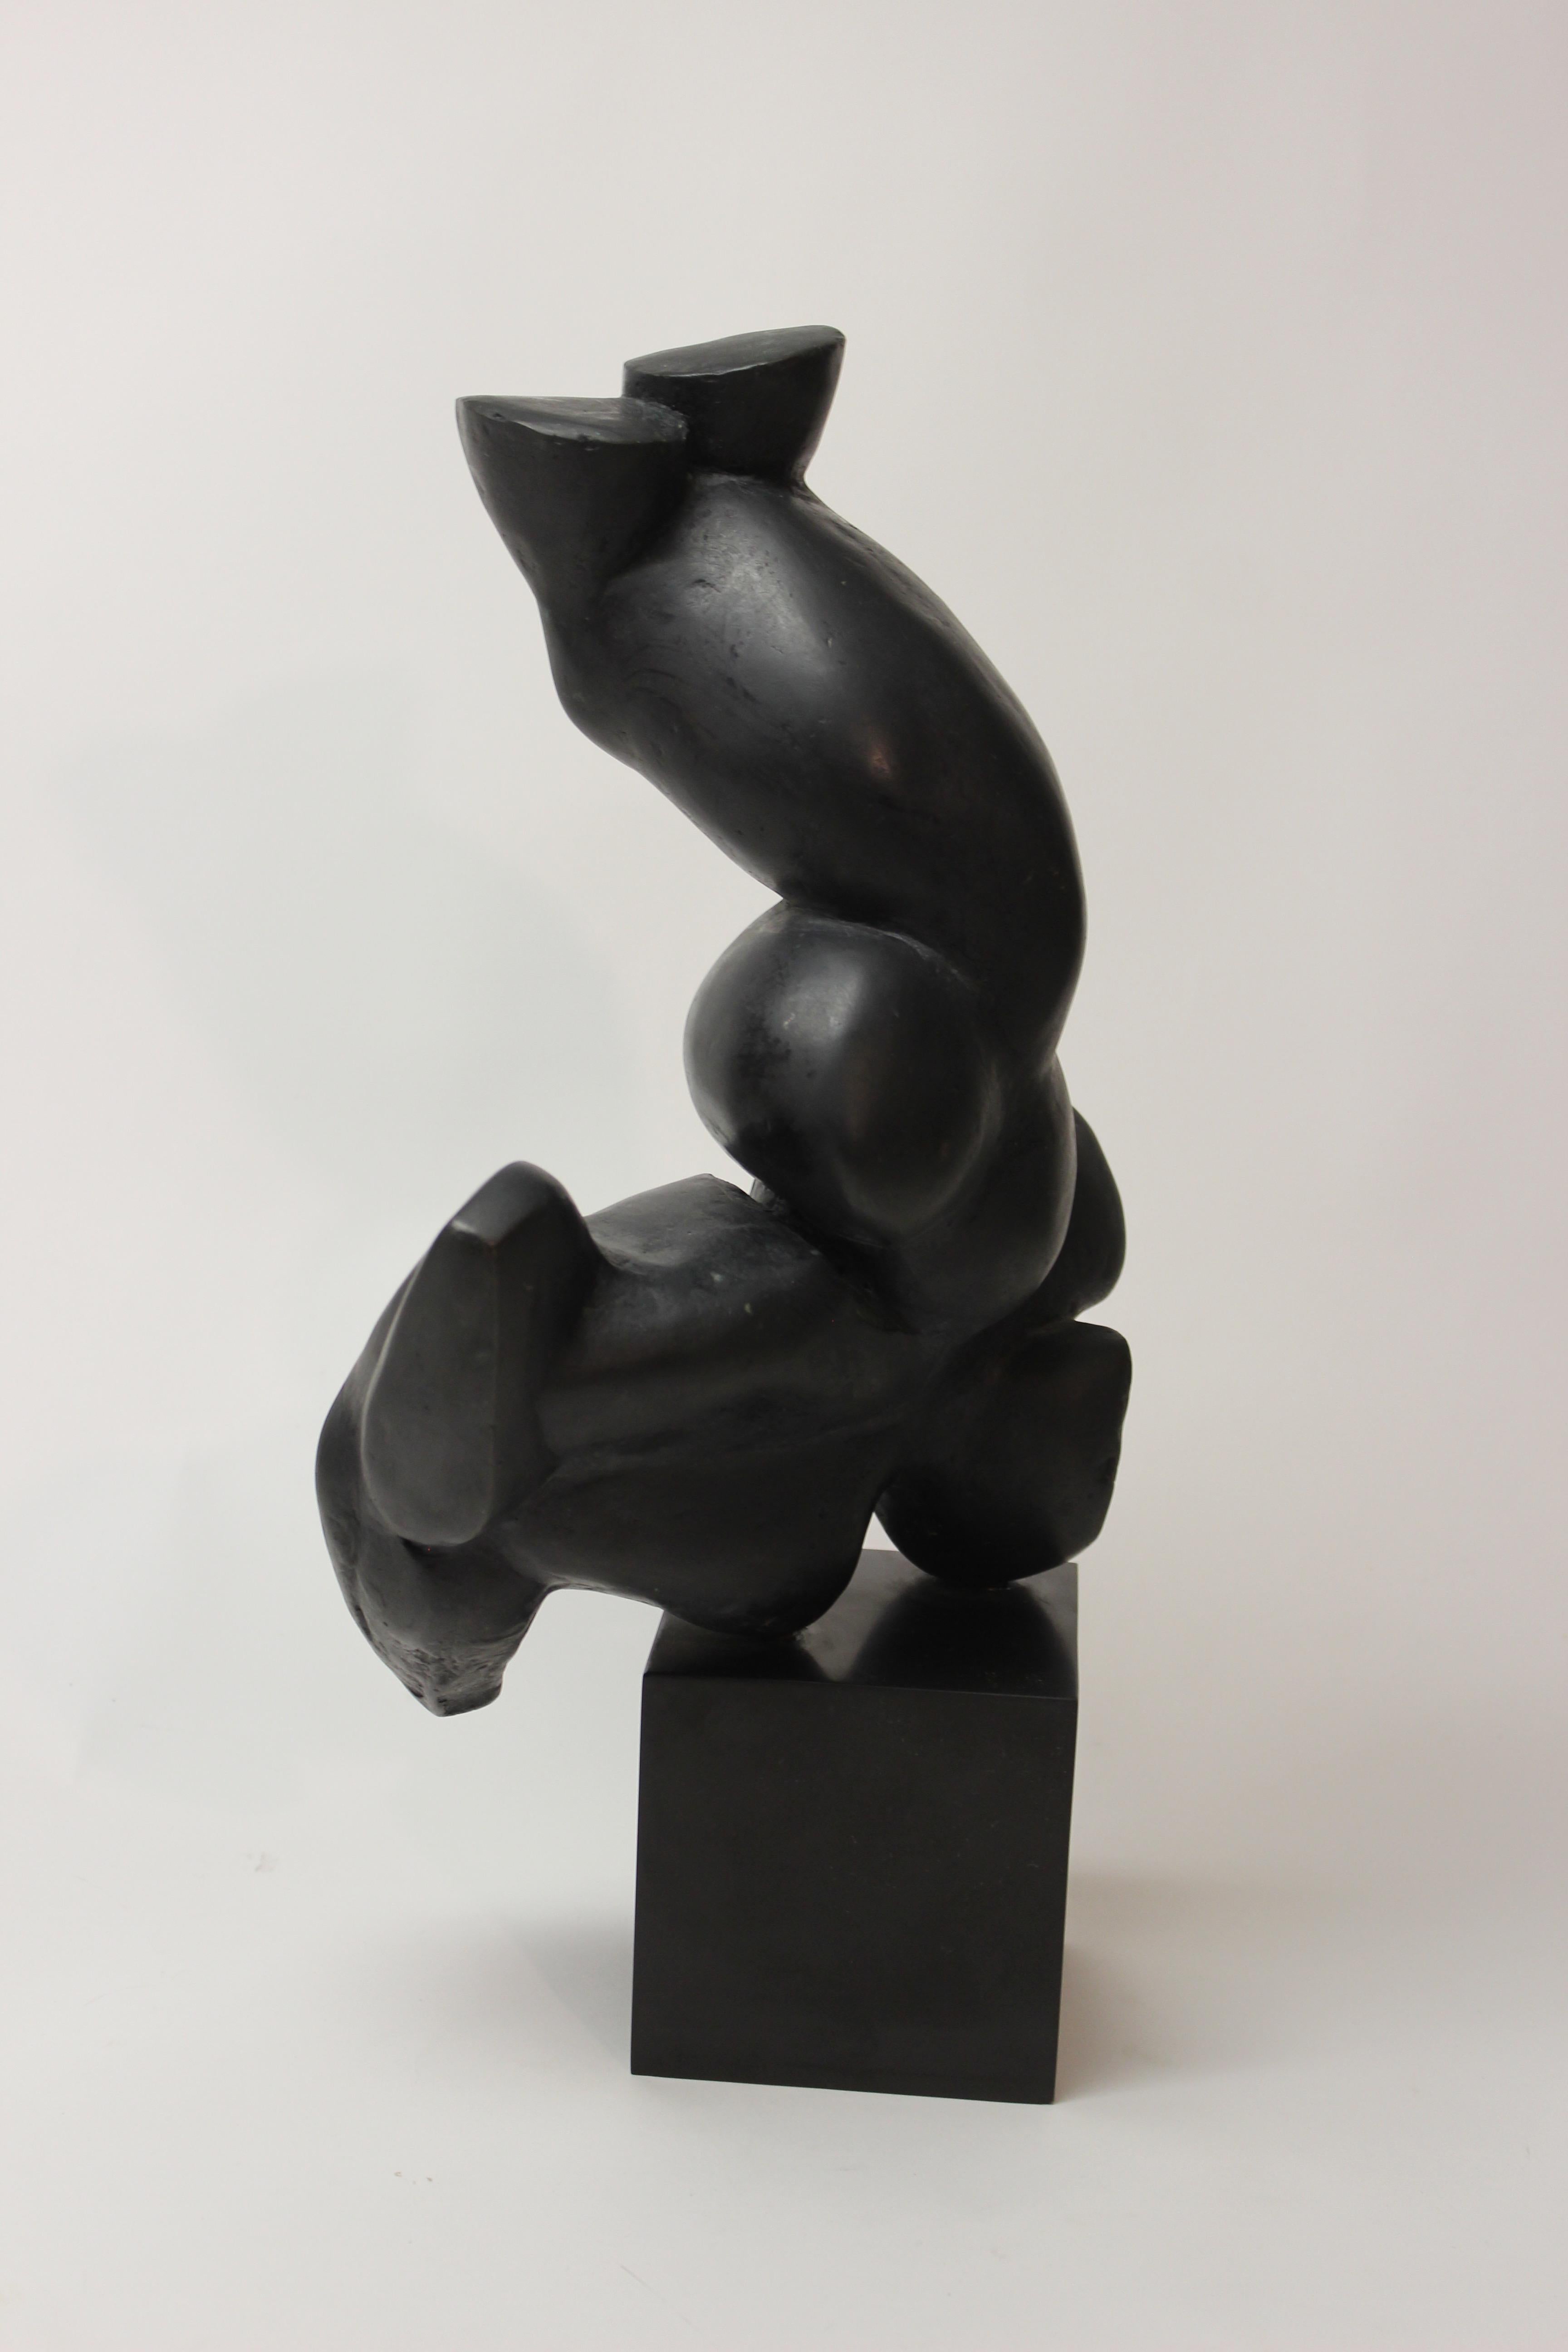 Abstract Bronze Sculpture by Elbert Weinberg 1